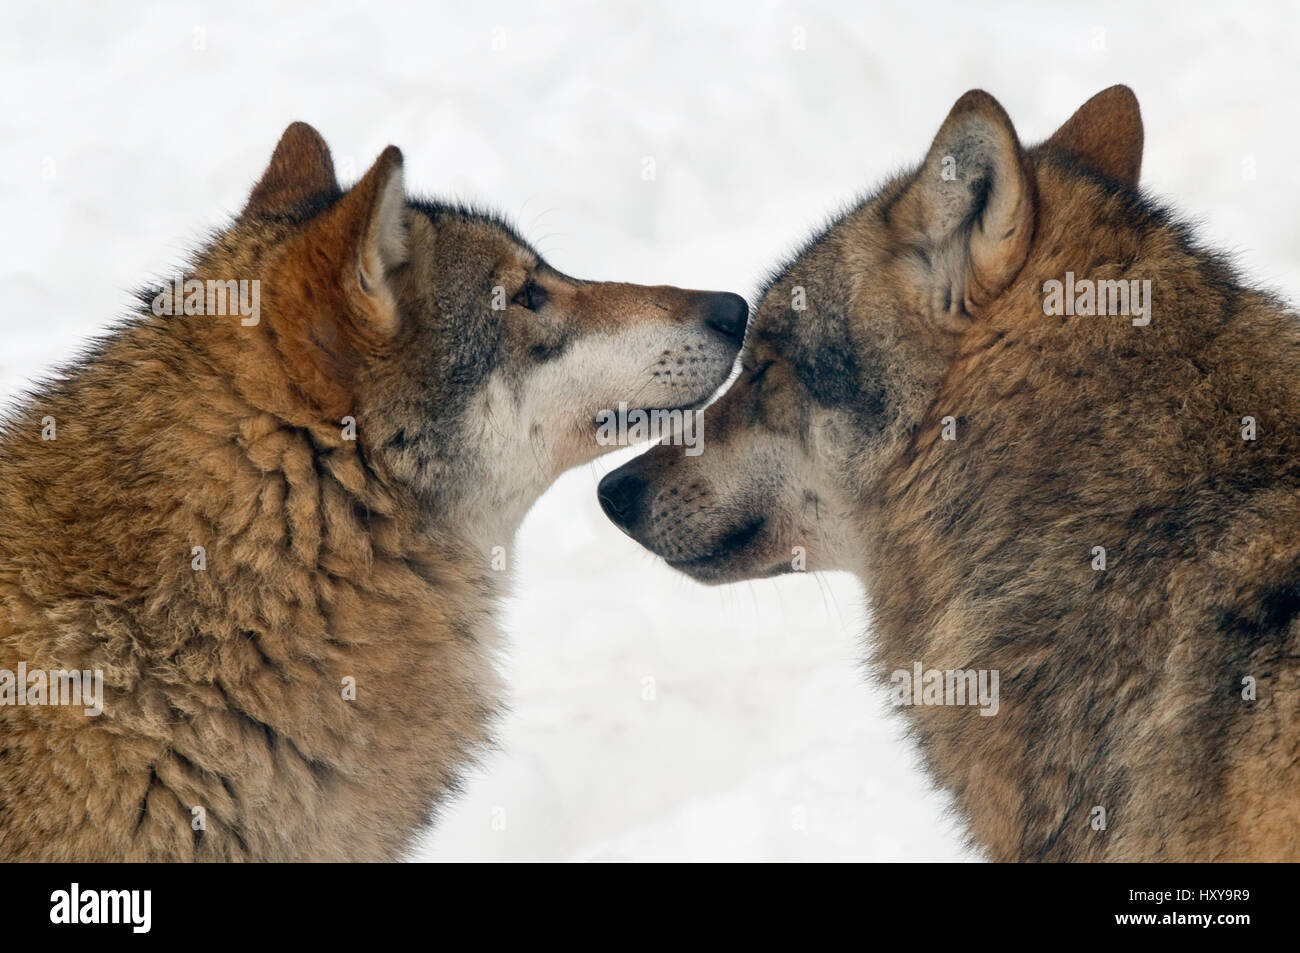 Le loup (Canis lupus) interaction entre les deux loups, captive. Banque D'Images